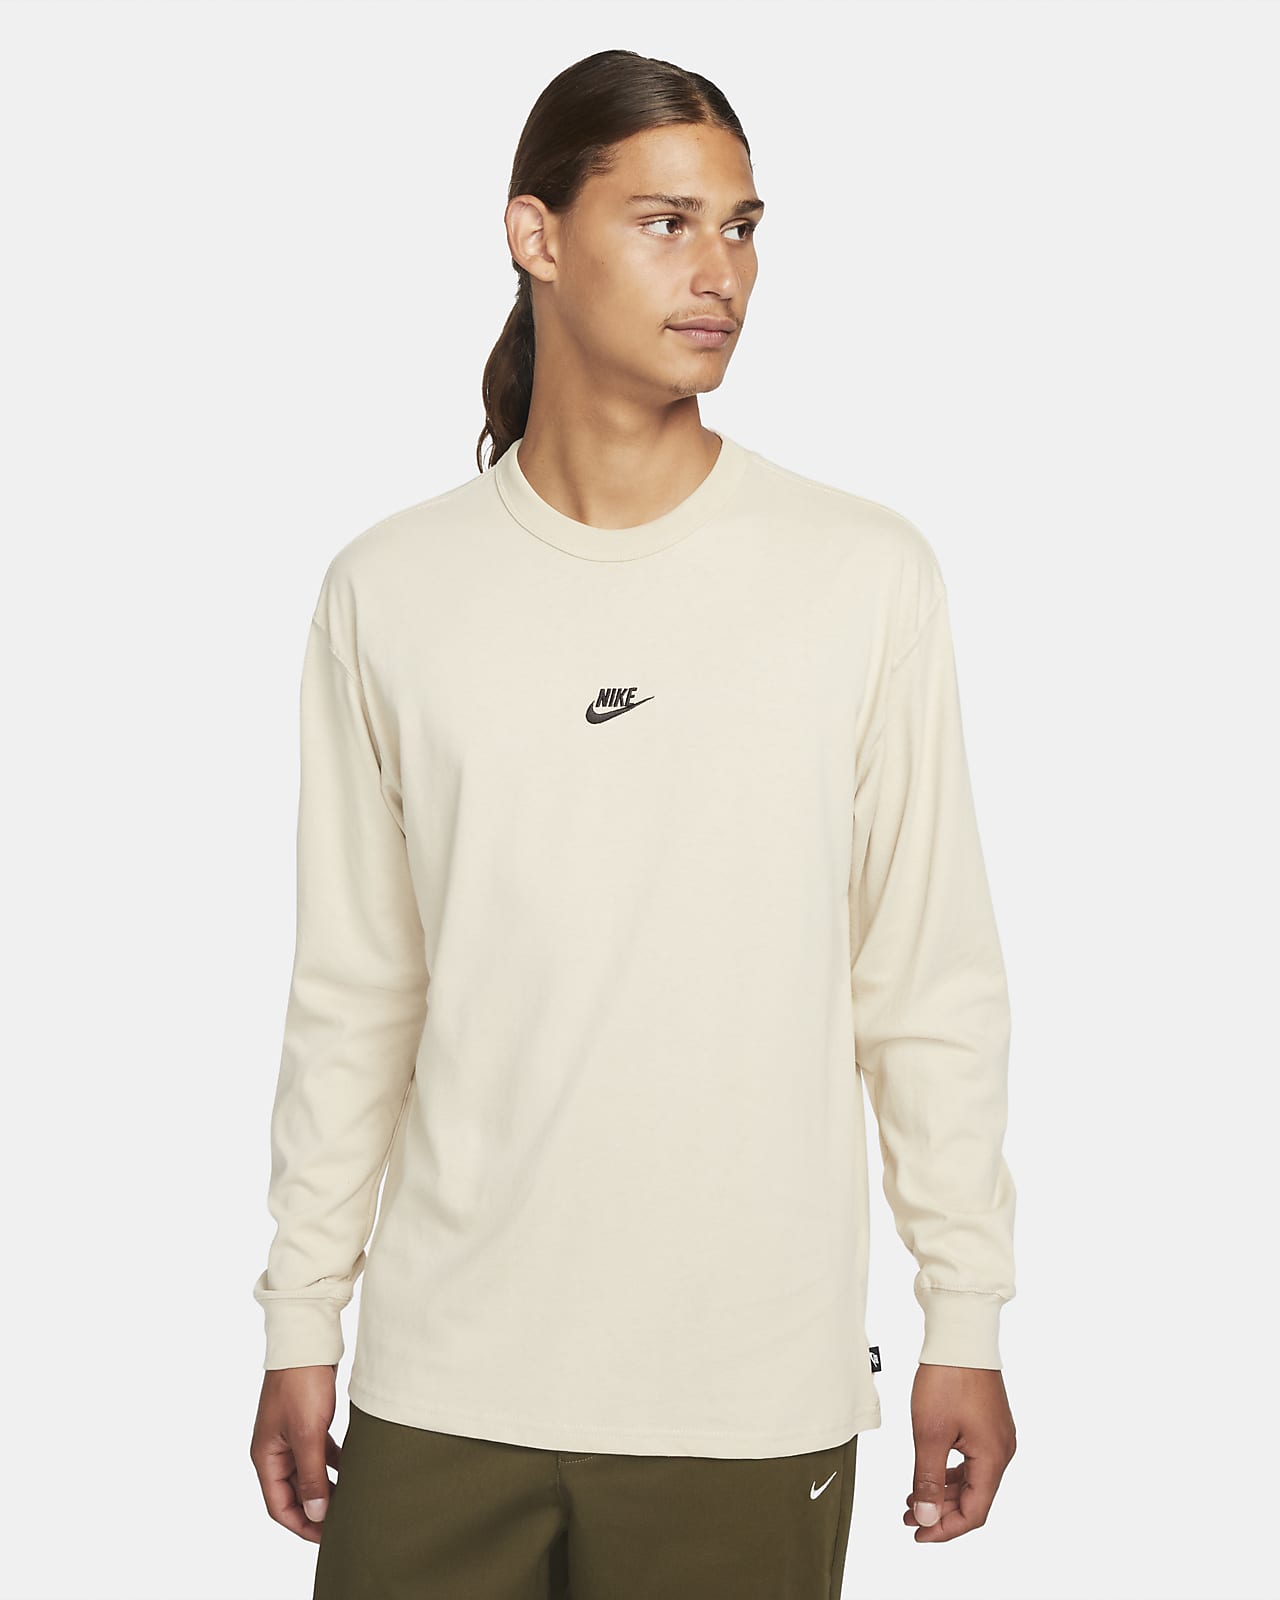 Beweegt niet cassette dorst Nike Sportswear Premium Essentials T-shirt met lange mouwen voor heren. Nike  NL